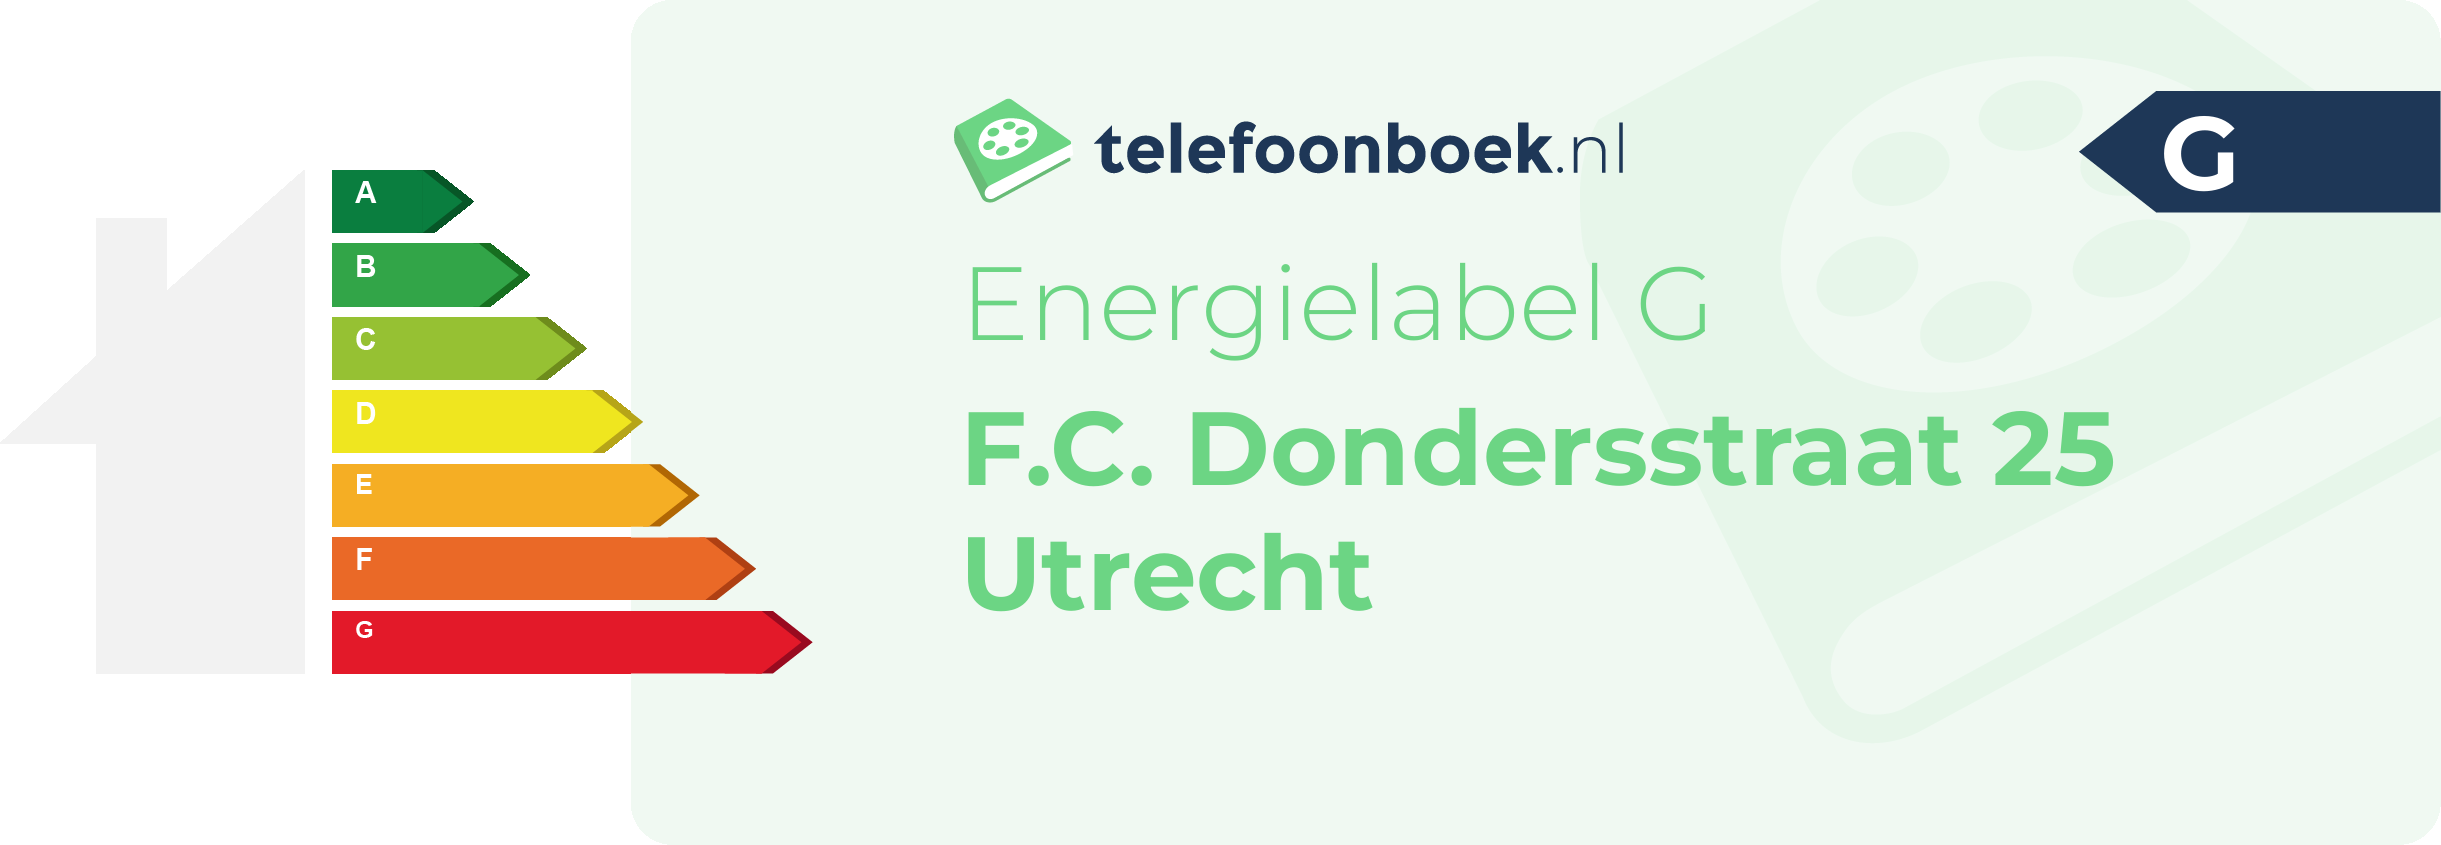 Energielabel F.C. Dondersstraat 25 Utrecht